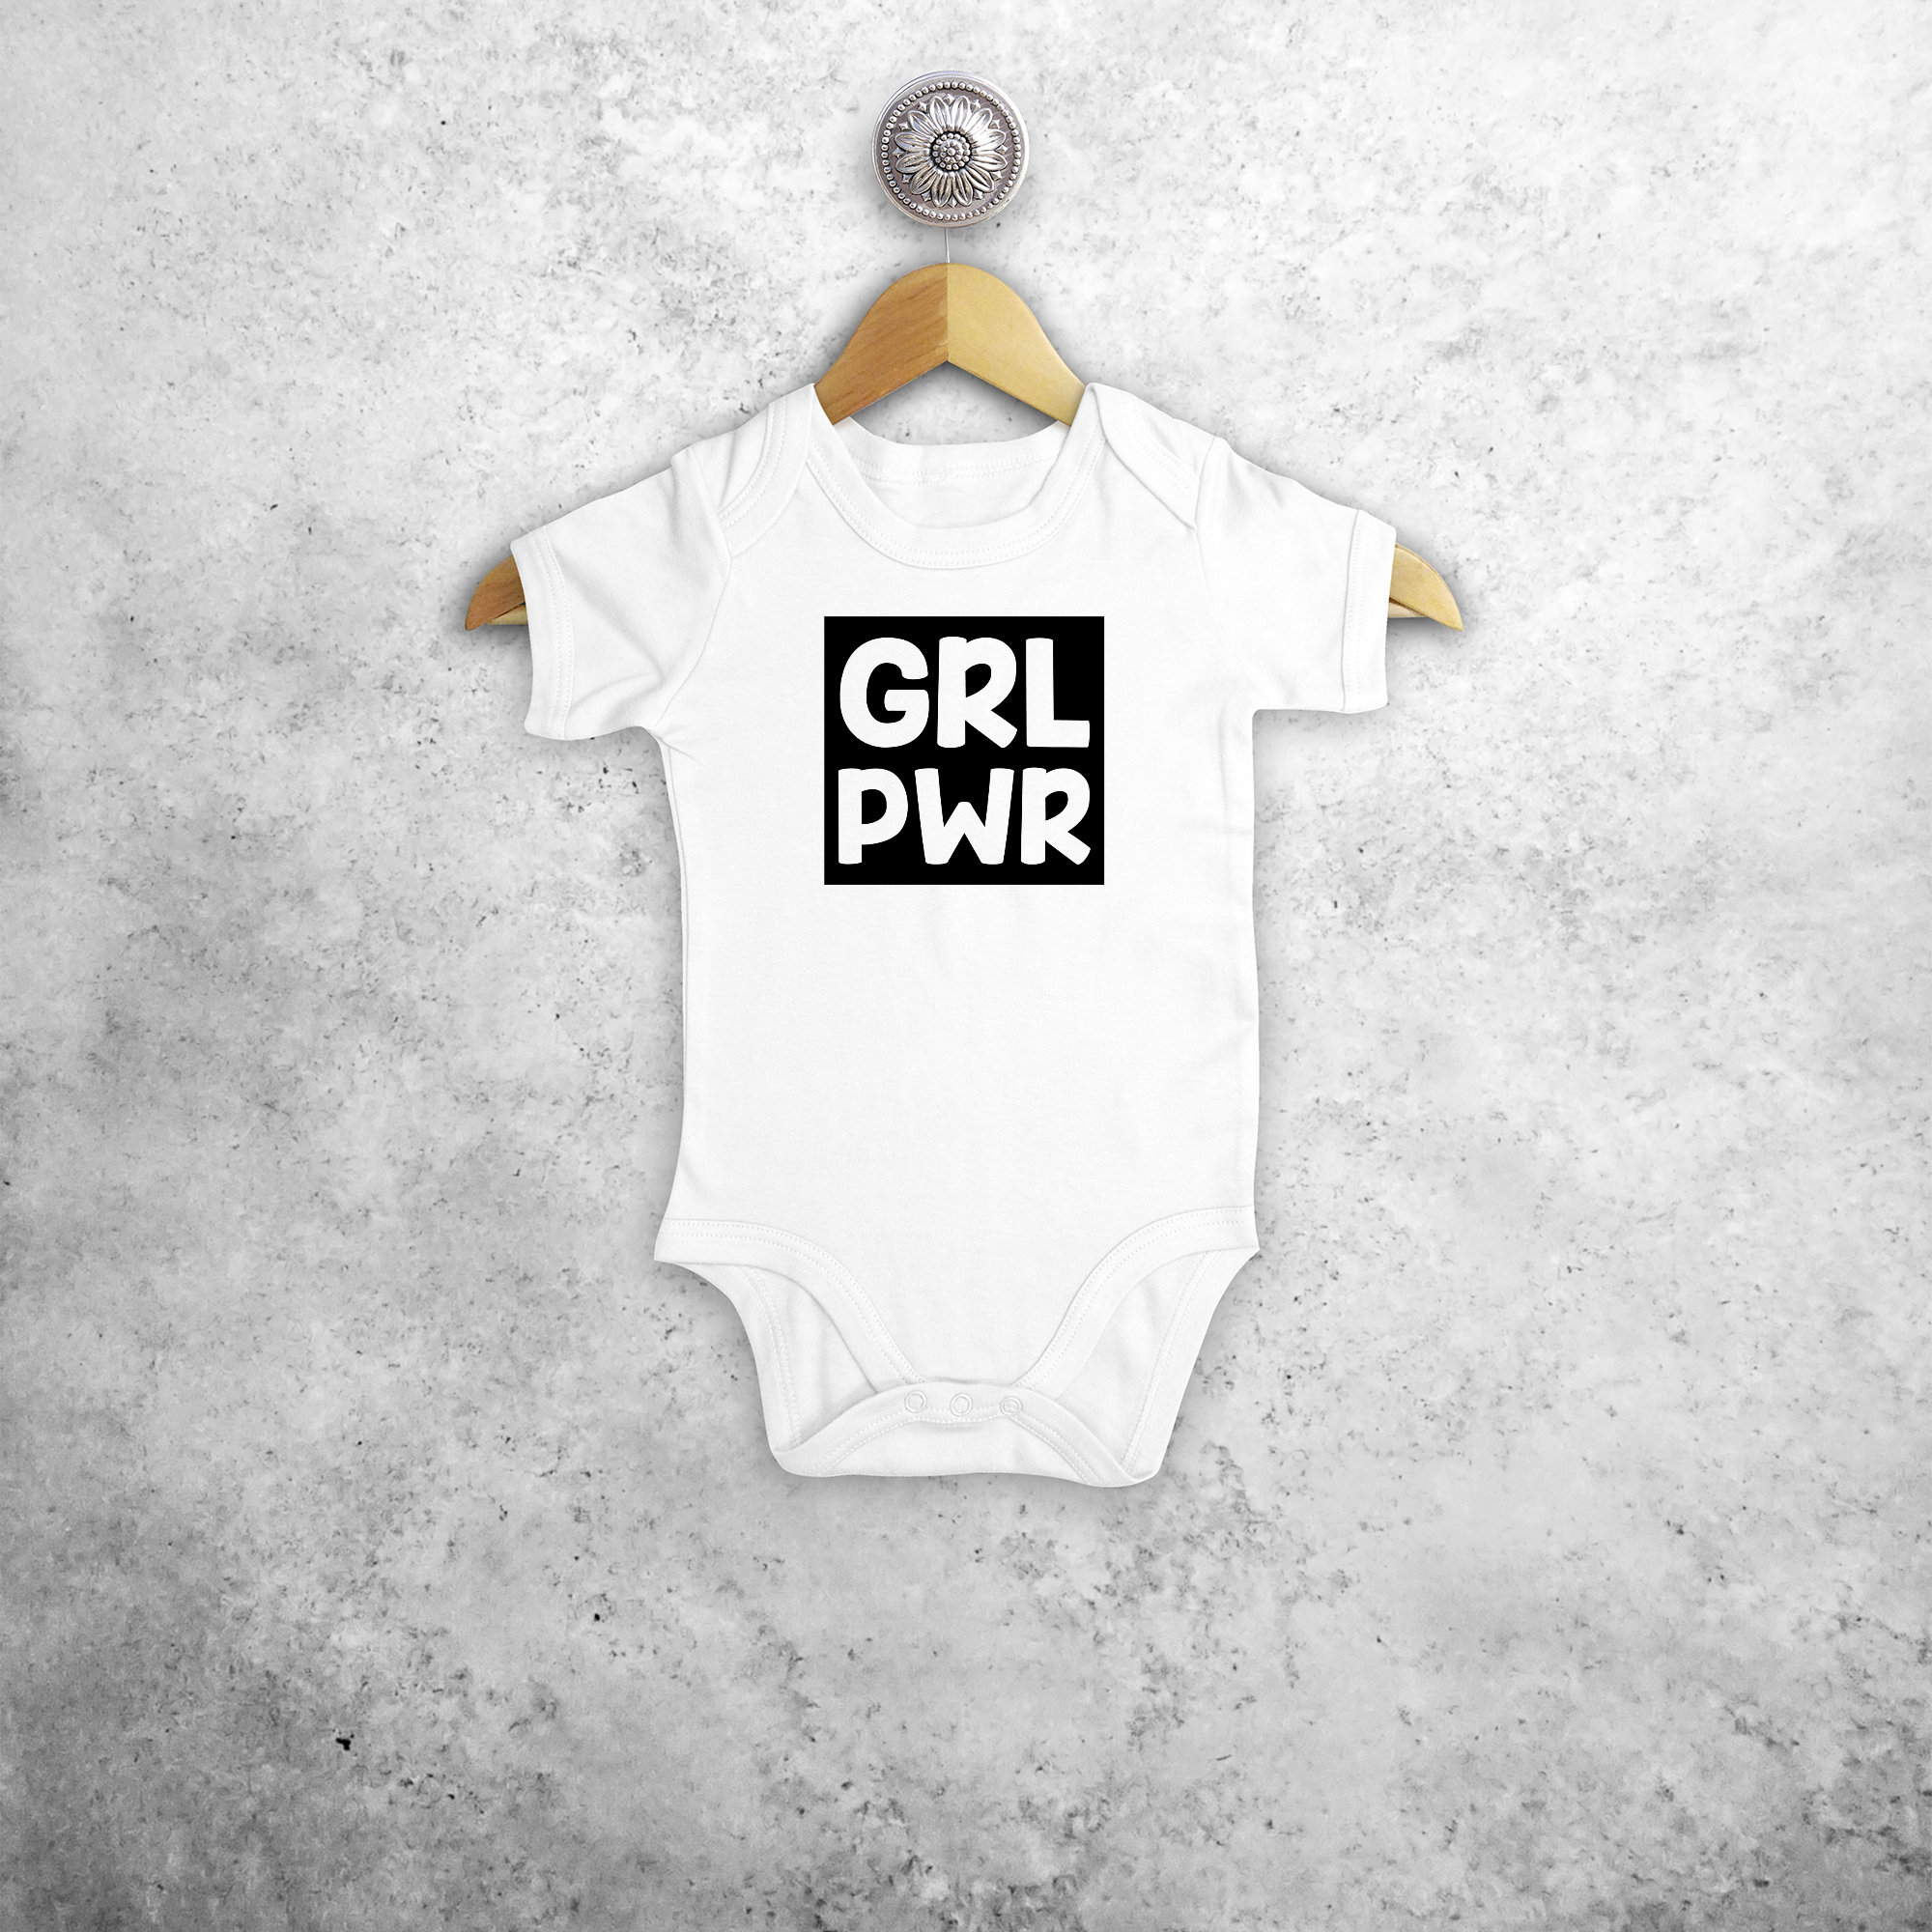 'GRL PWR' baby kruippakje met korte mouwen